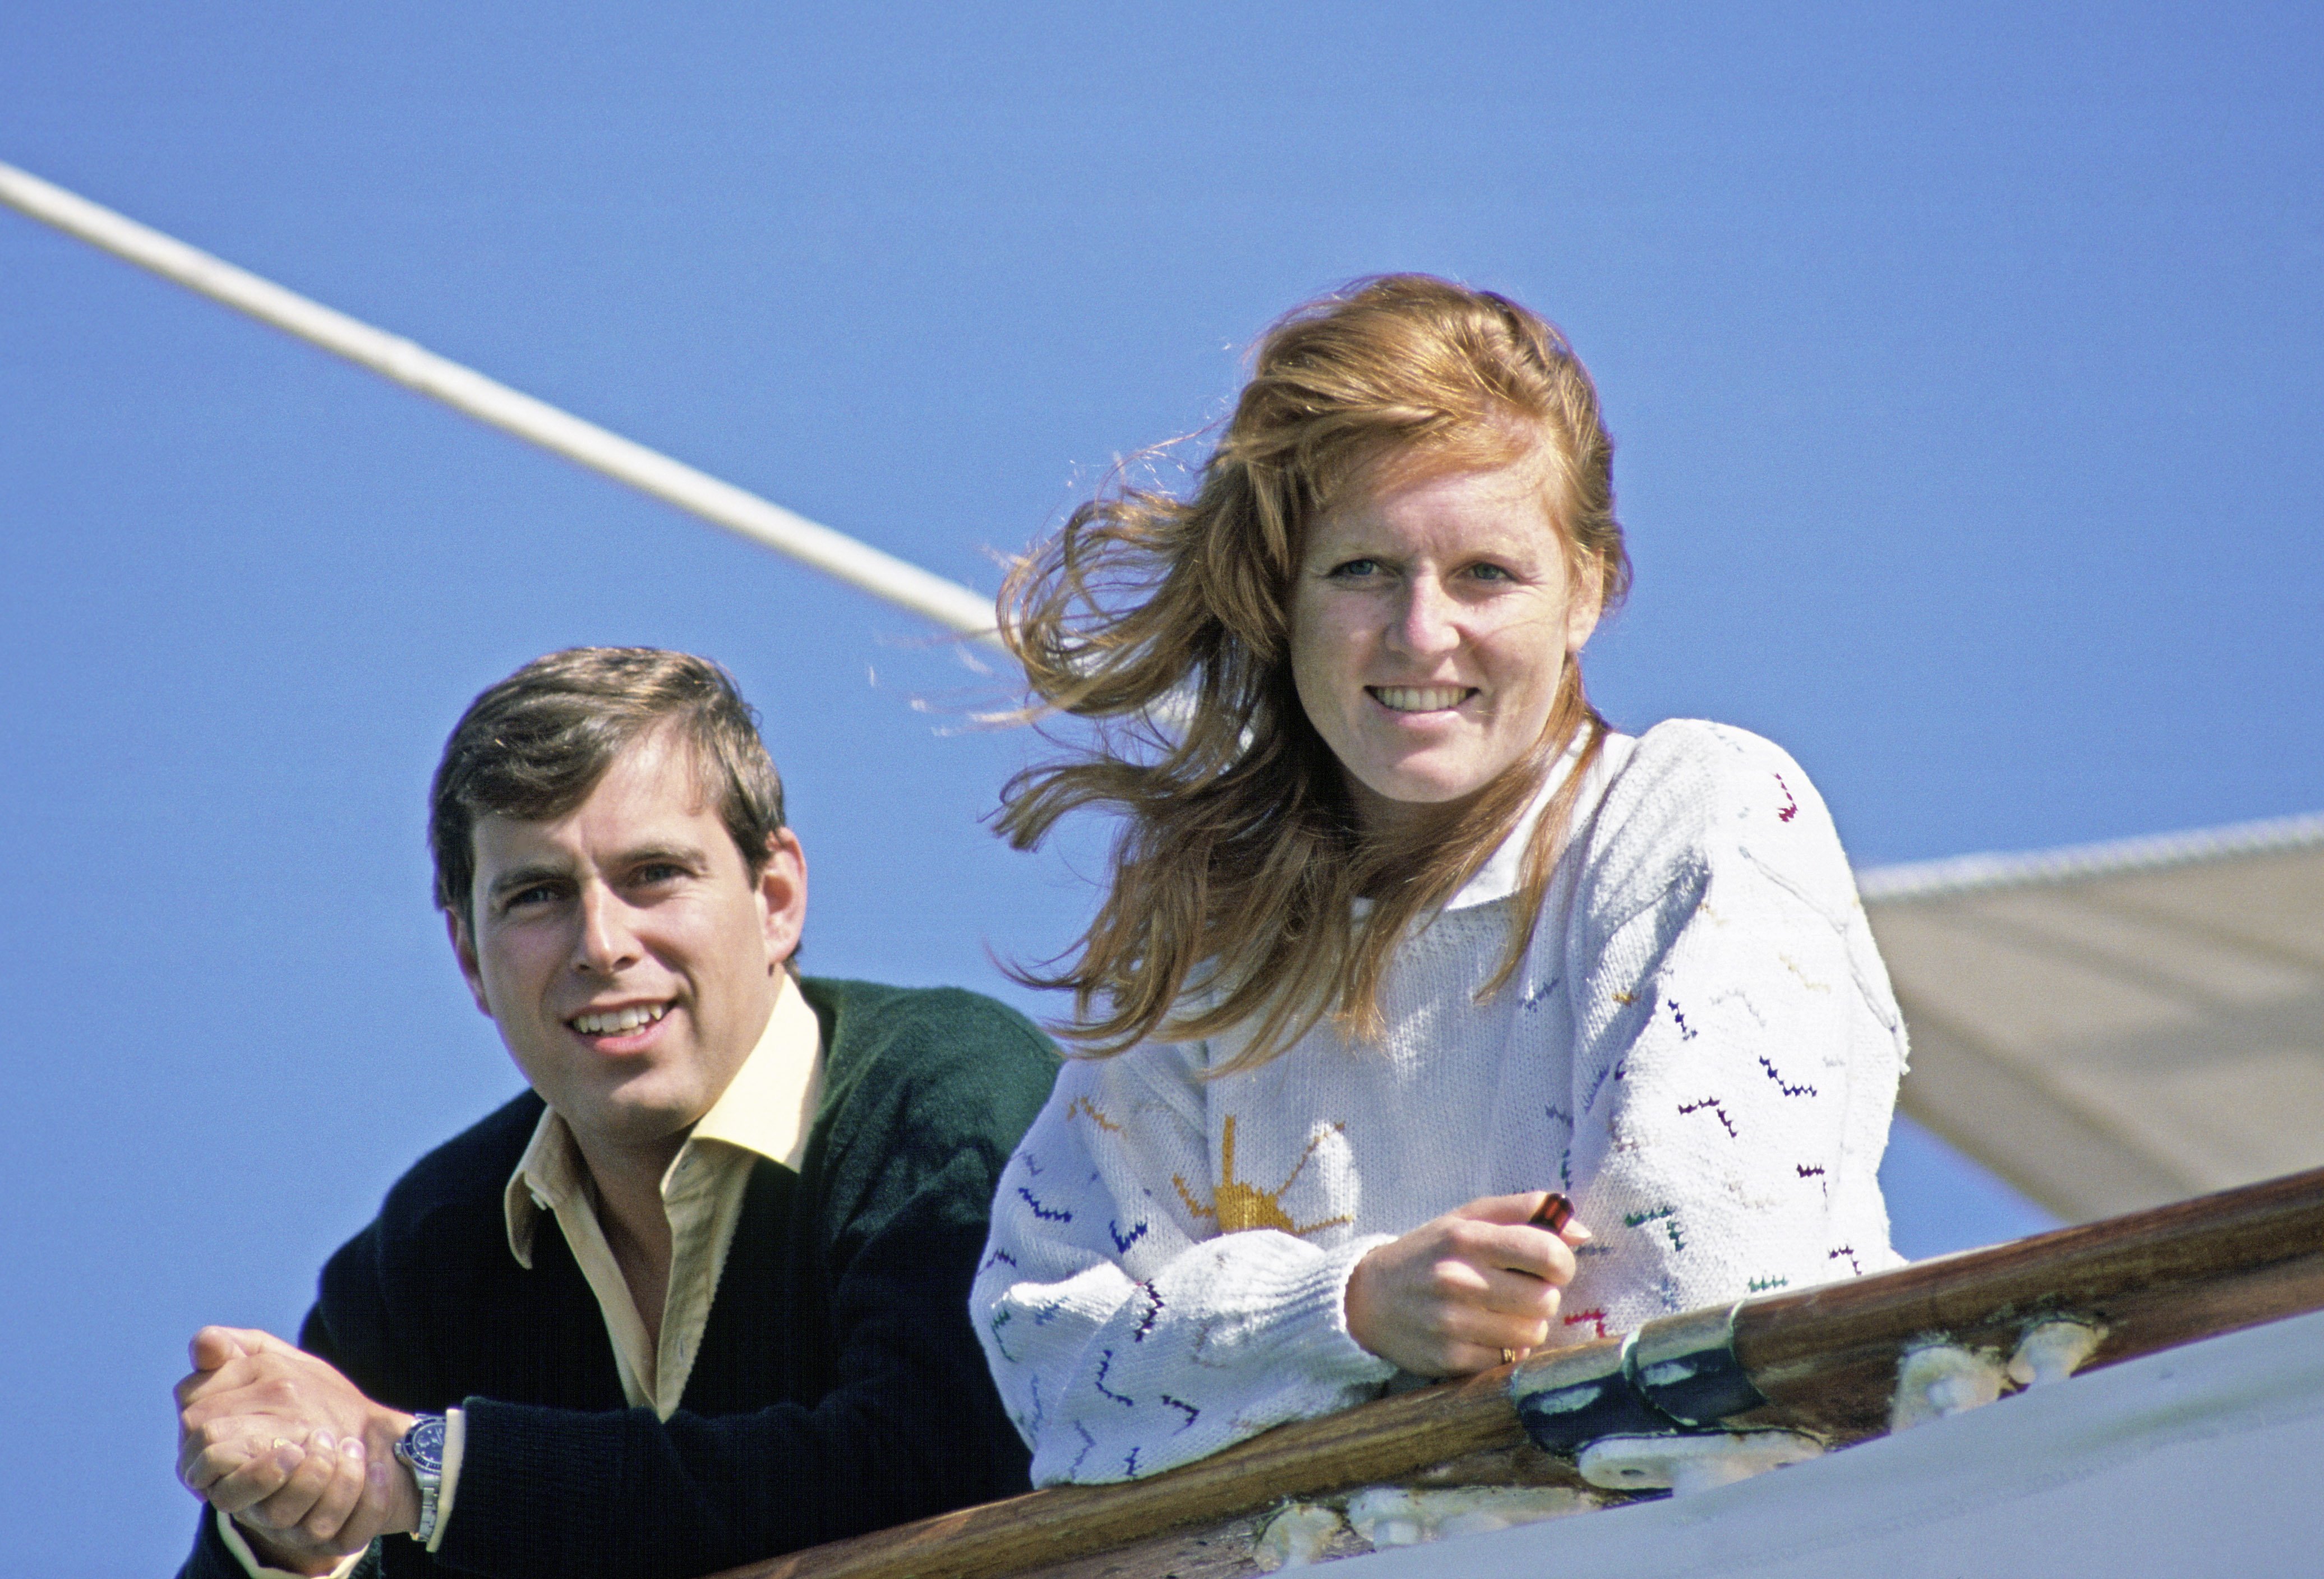 Le duc et la duchesse d'York rentrant de leur lune de miel à bord du yacht royal Britannia. | Source : Getty Images